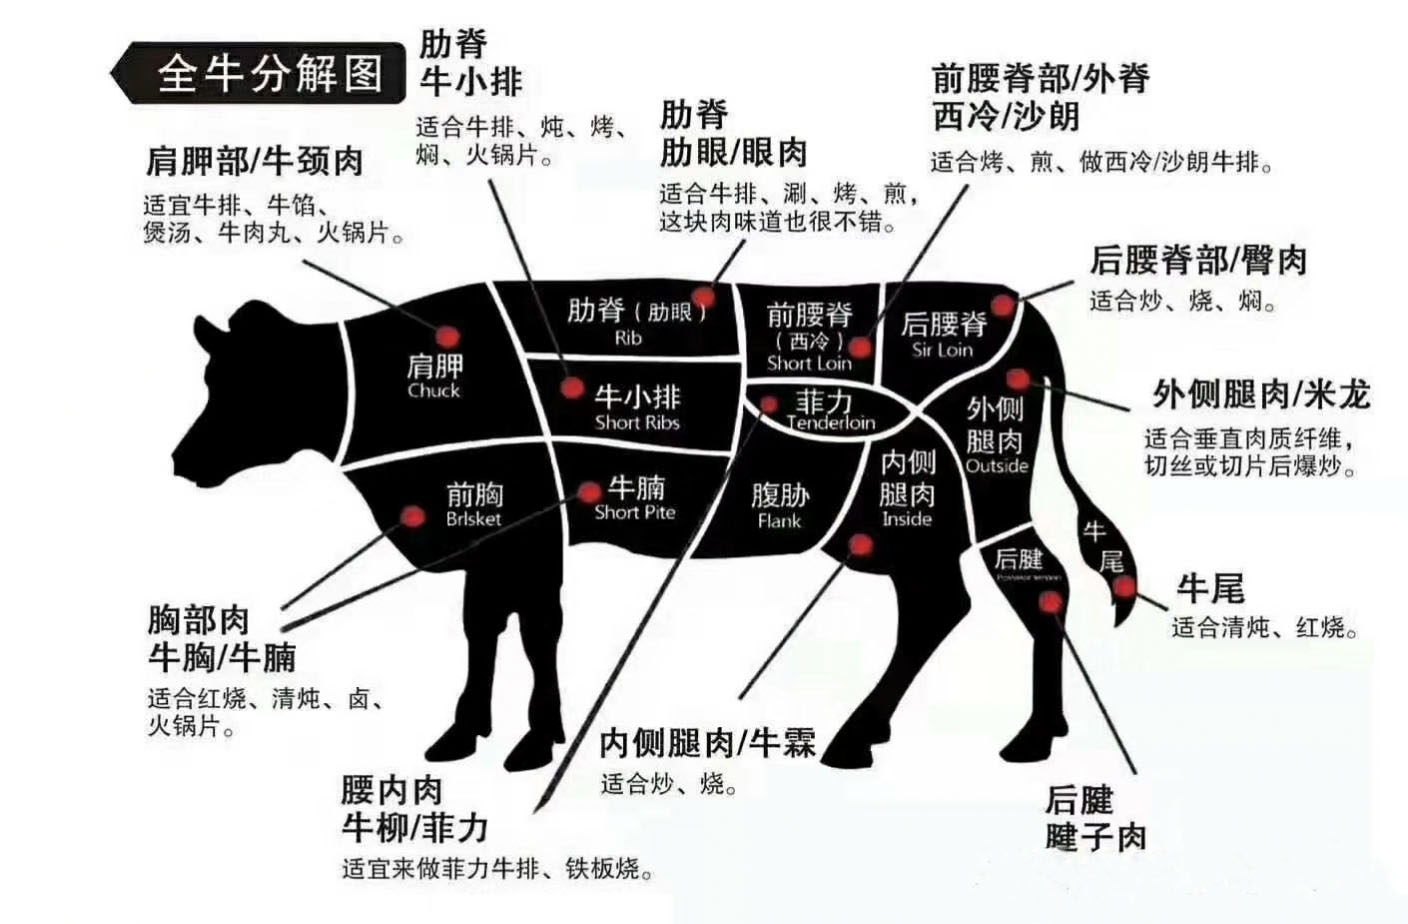 牛的身体部位名称图片